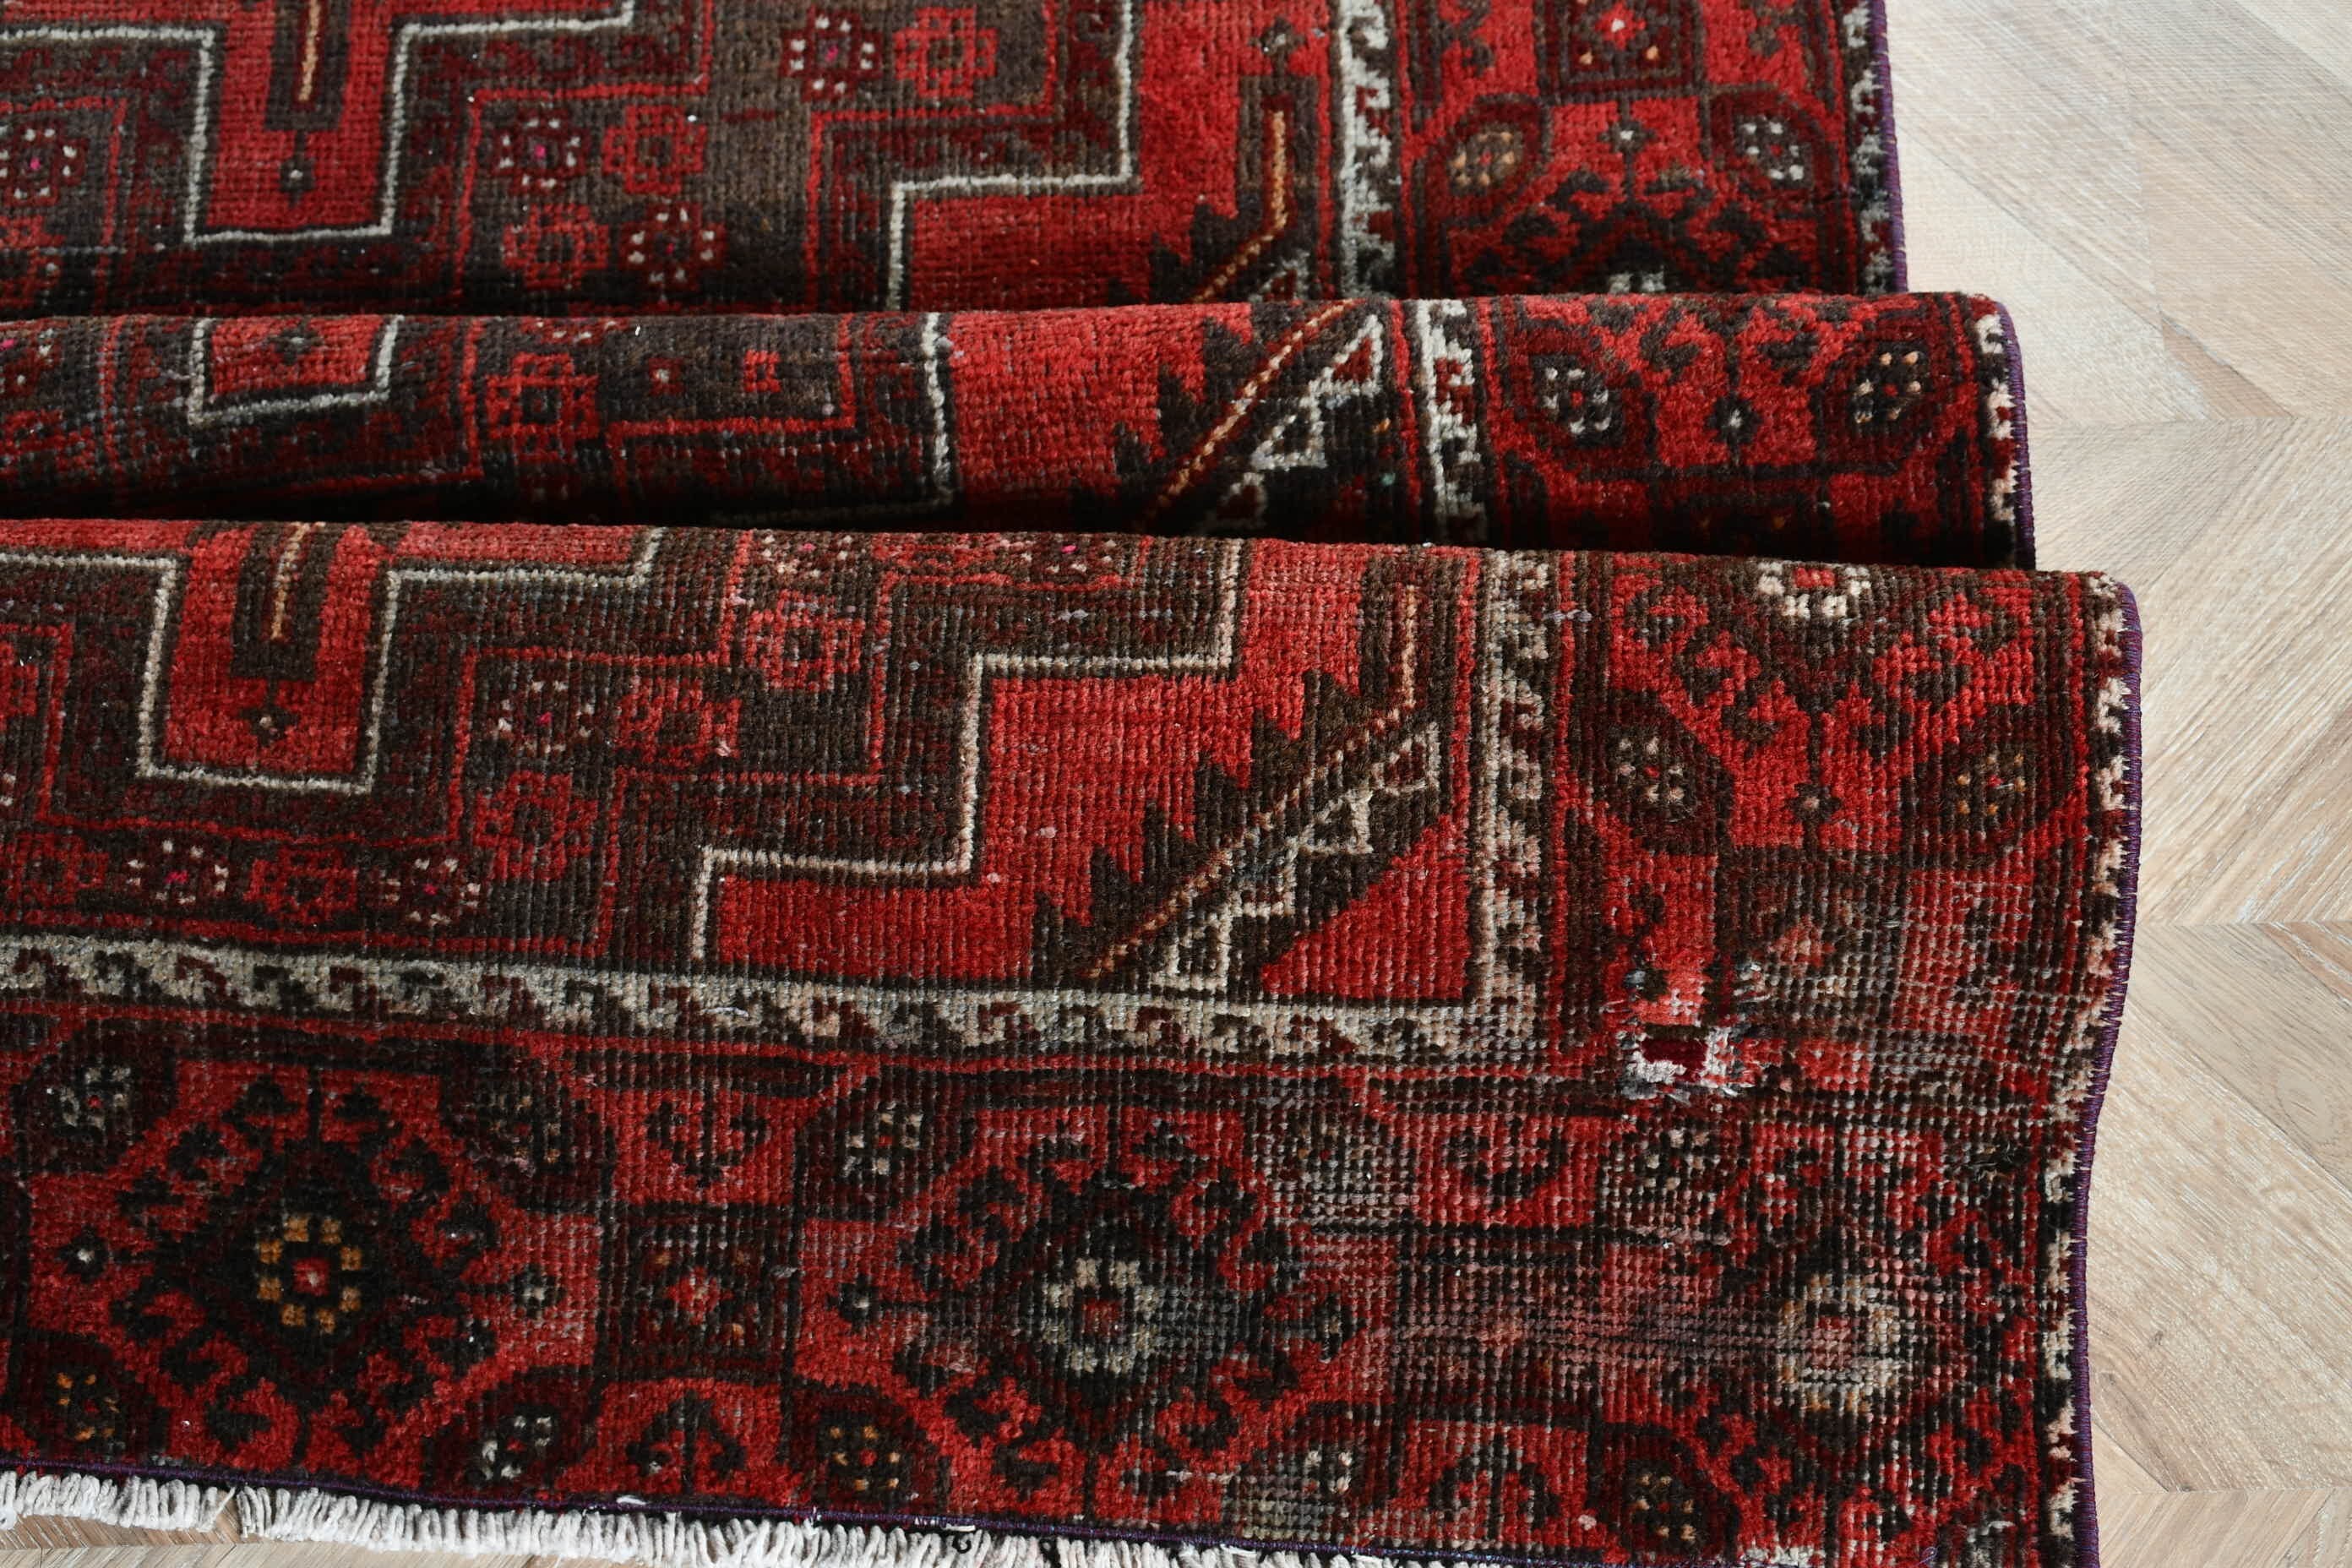 Turkish Rug, Home Decor Rug, Vintage Rug, 4.1x7.3 ft Area Rug, Rugs for Floor, Floor Rug, Red Home Decor Rugs, Bedroom Rugs, Kitchen Rug